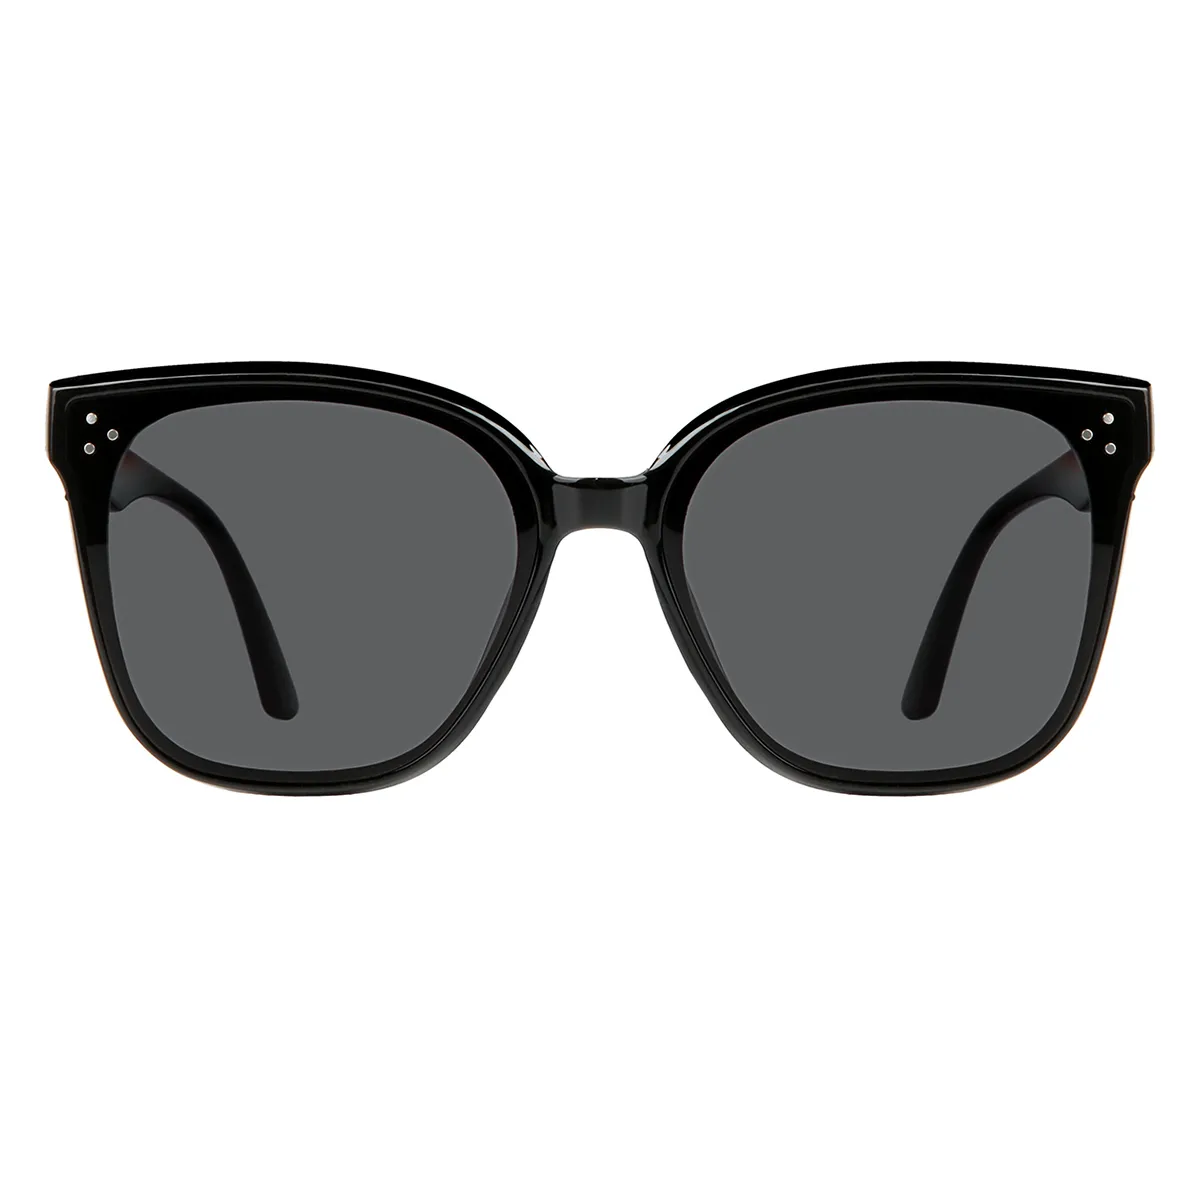 EFE: Buy Best Eyeglasses Online at Affordable Price